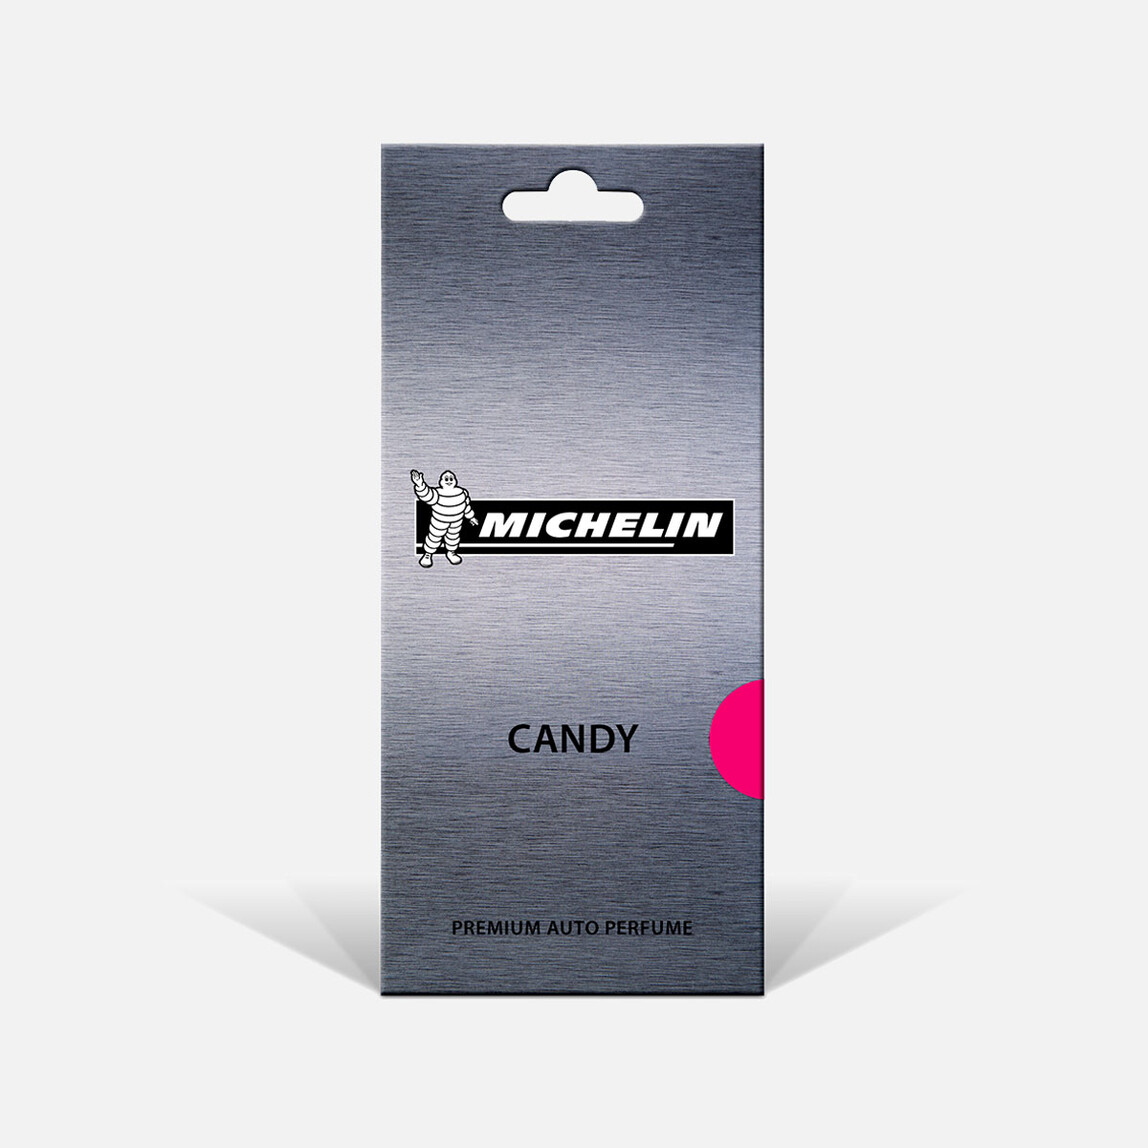    Michelin MC31944 Candy Kokulu Askılı Oto Kokusu  